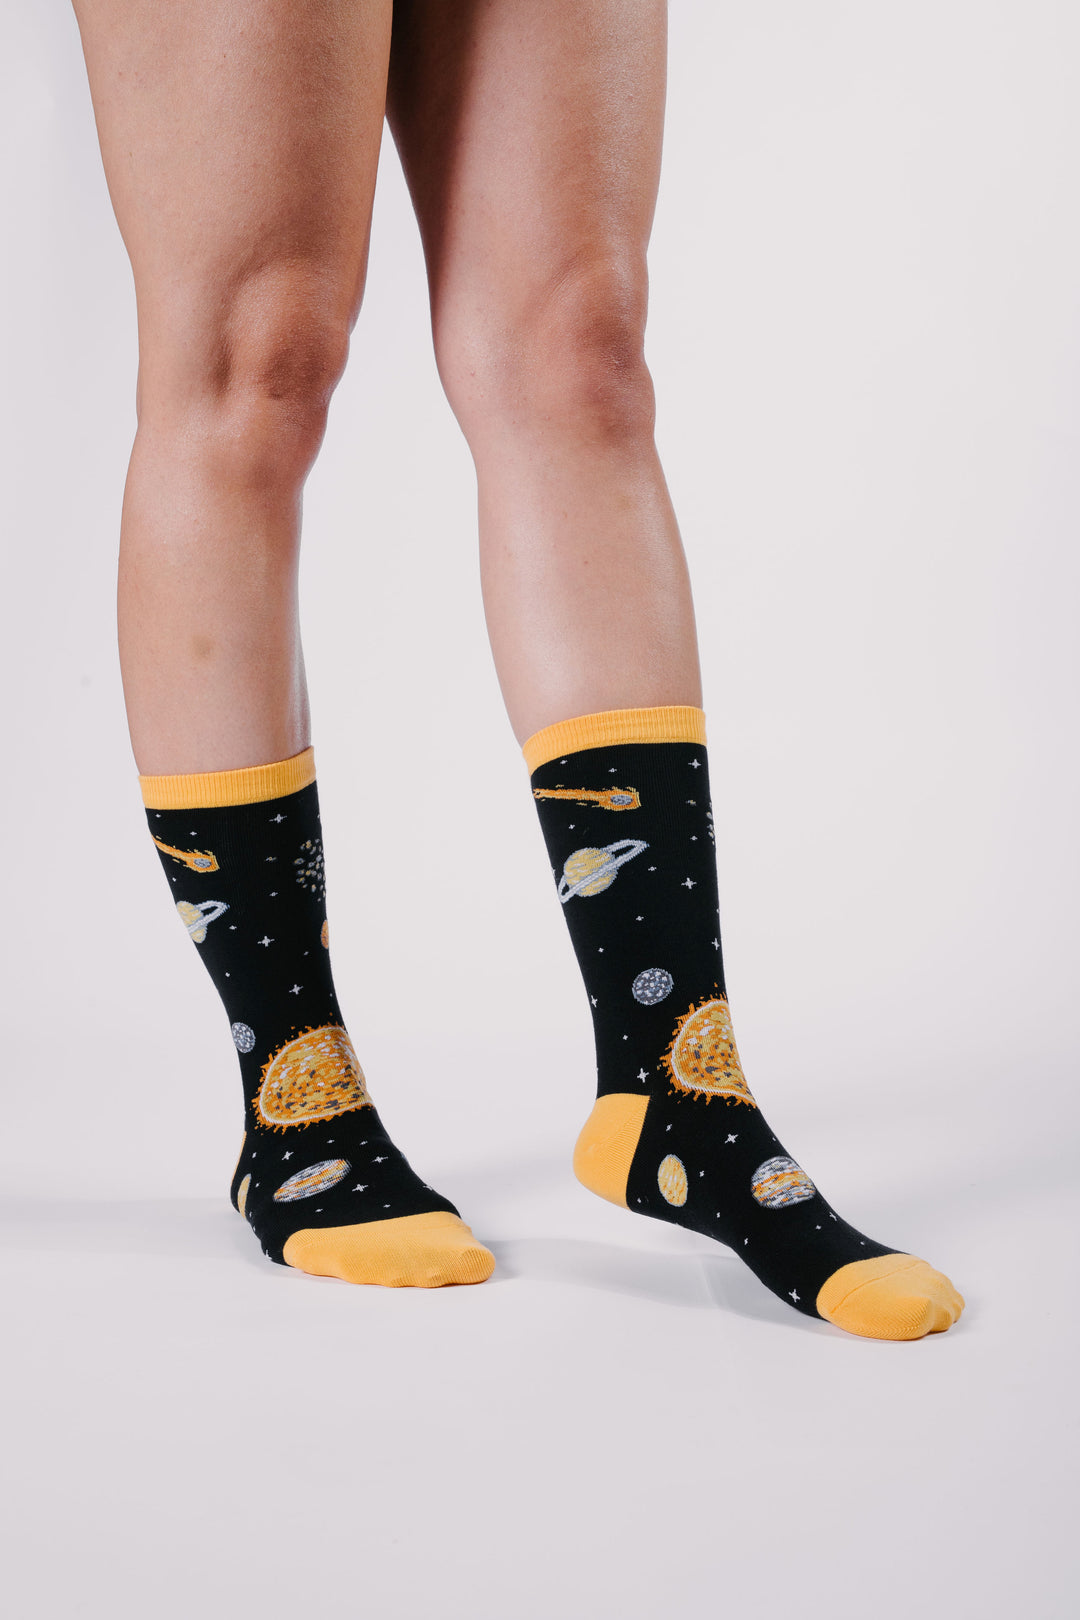 Socks In Space